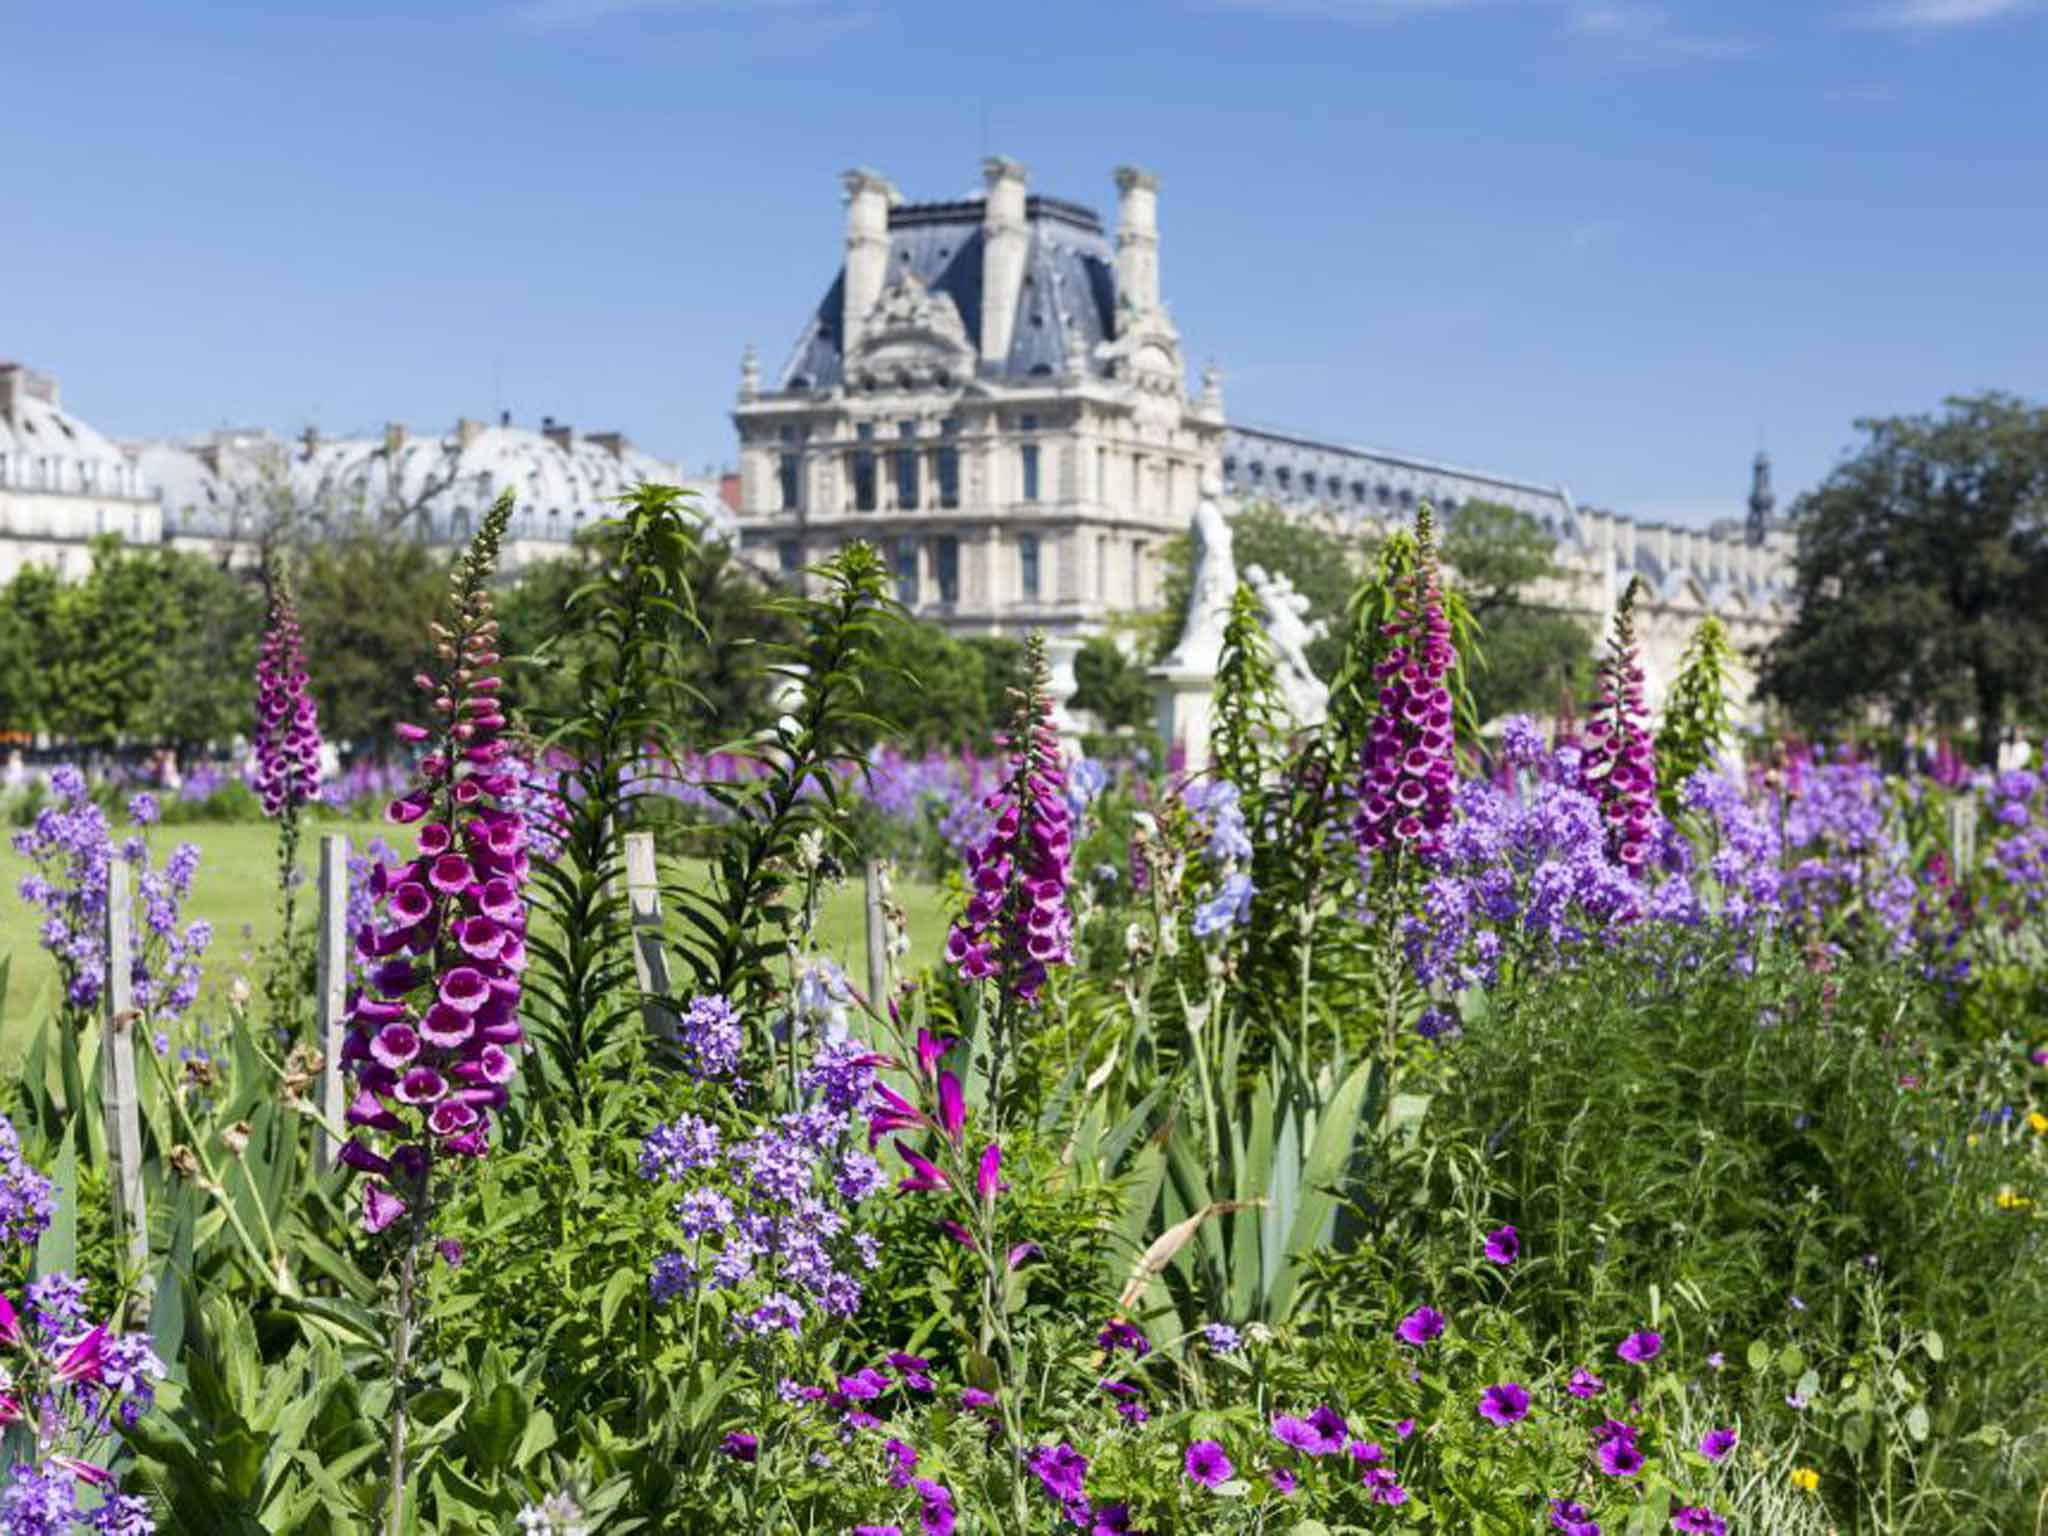 Flower power: Jardin des Tuileries, Paris